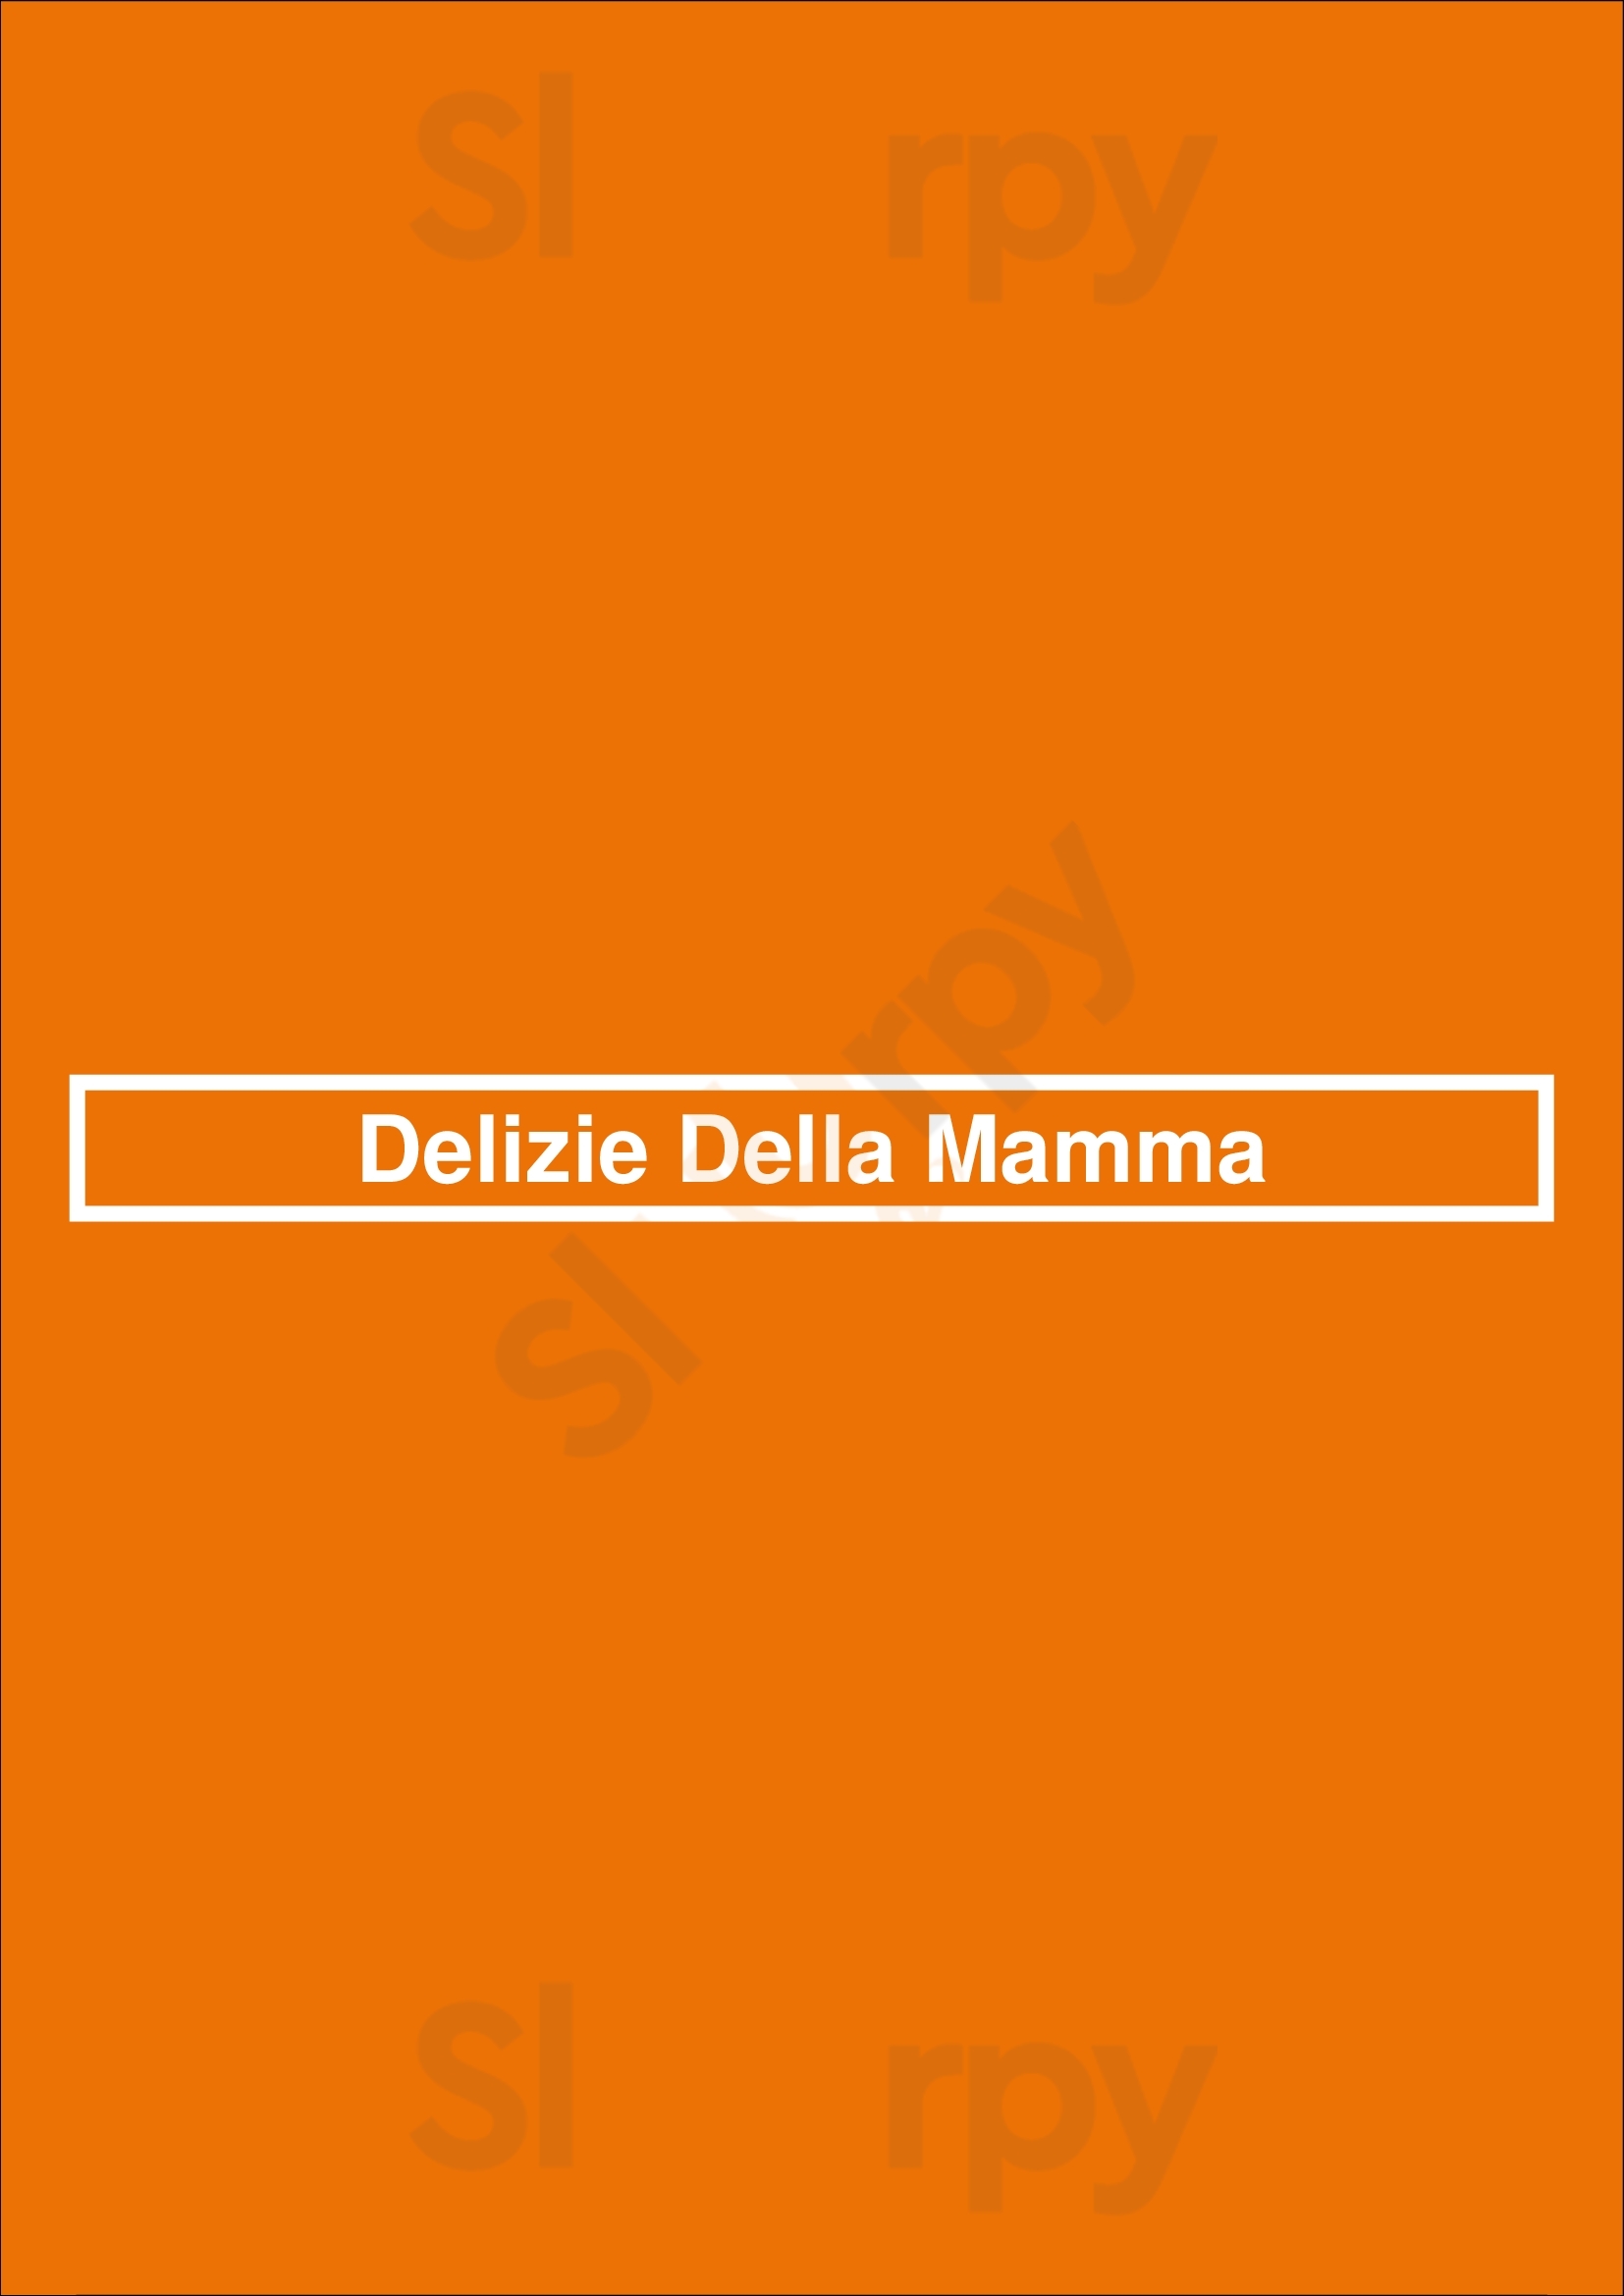 Delizie Della Mamma Bruxelles Menu - 1